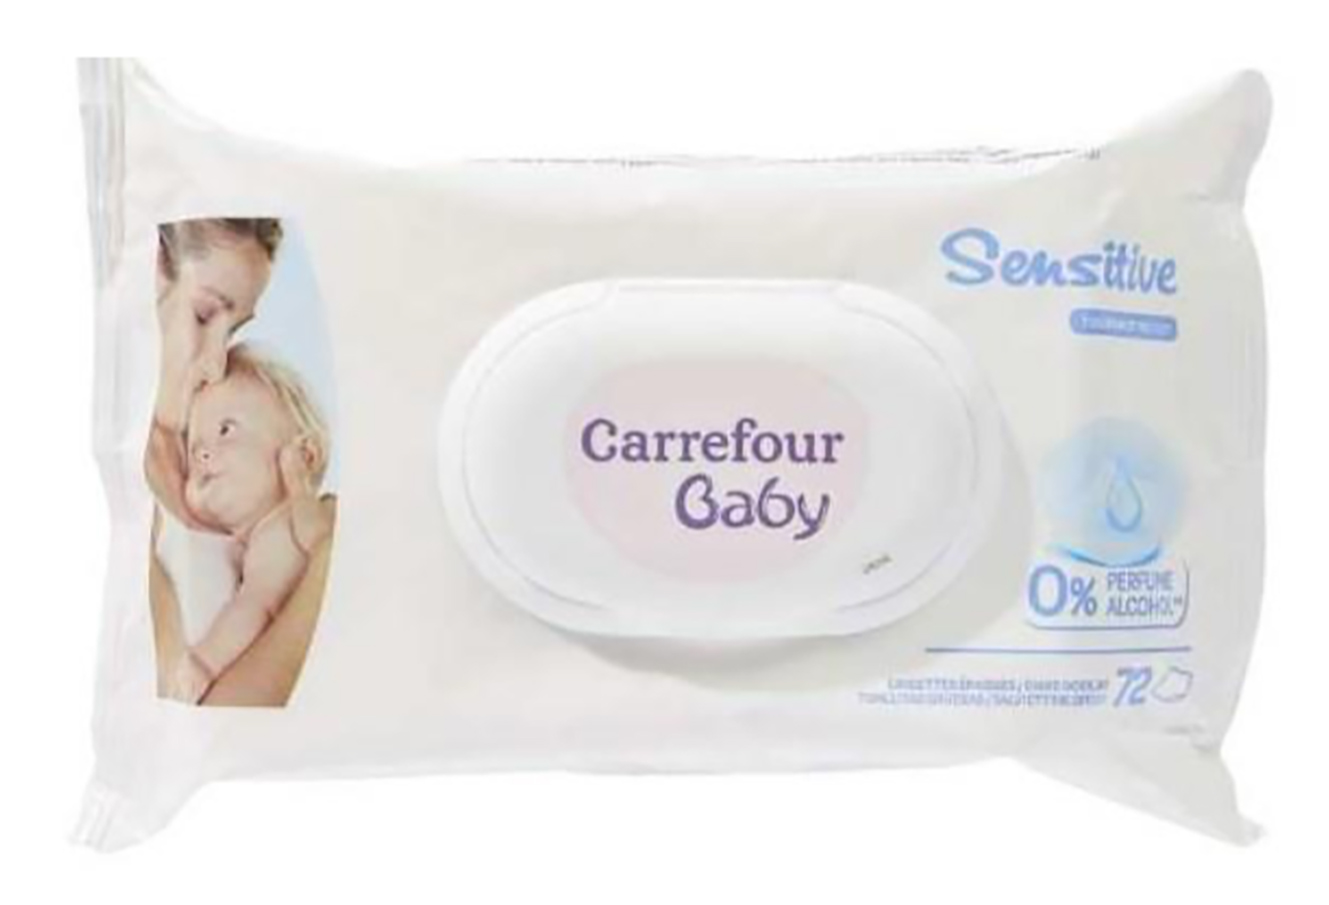 Les tovalloletes Carrefour Baby Sensitive de 72 unitats han queda